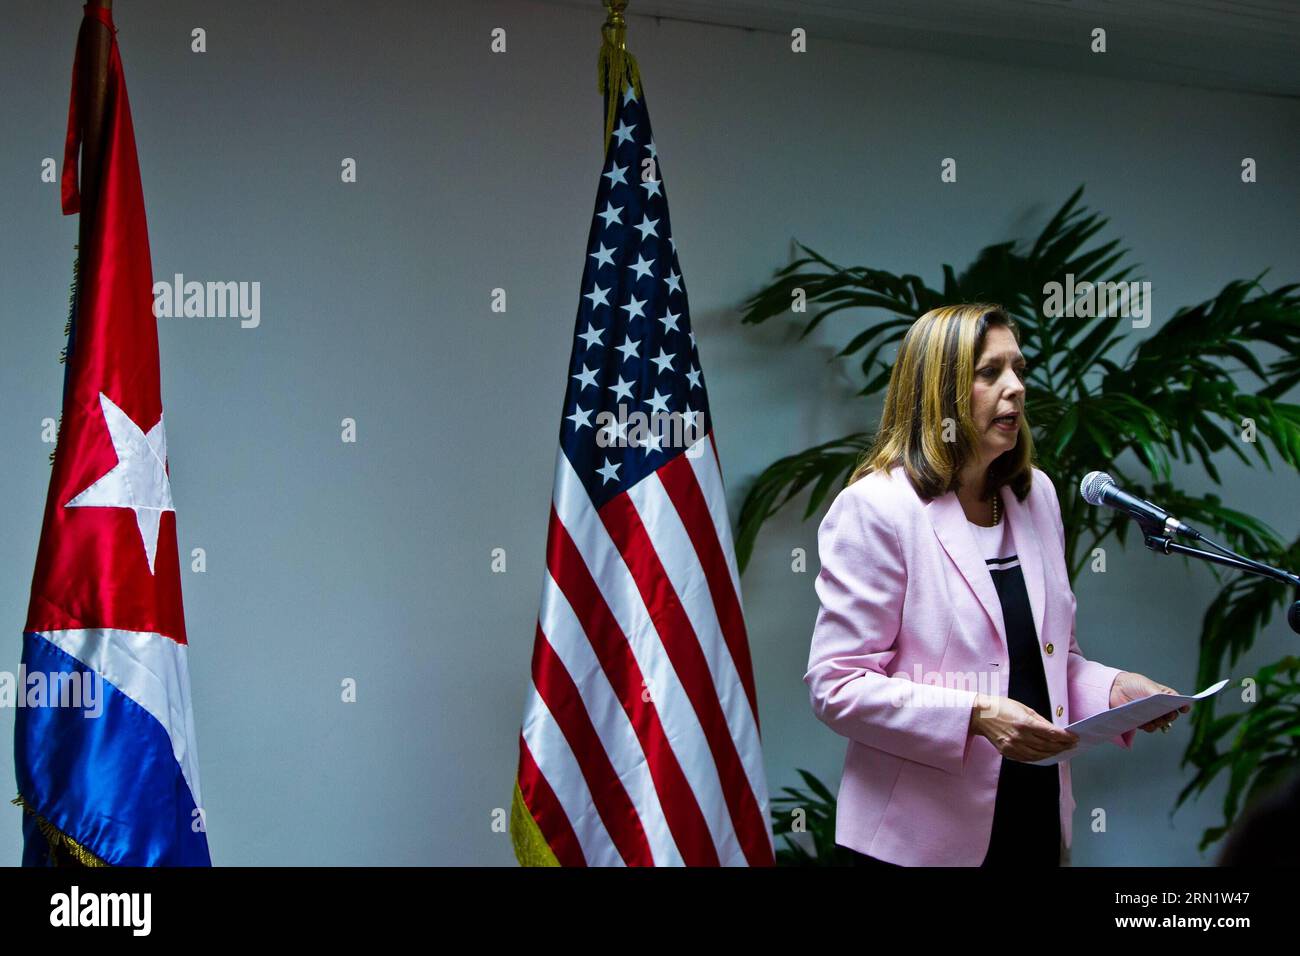 POLITIK US-kubanische Gespräche a l'Avanna (150121) -- L'AVANA, 21 gennaio 2015 -- Josefina Vidal Ferreira, direttore generale del Ministero degli affari Esteri cubano degli Stati Uniti, parla alla conferenza stampa dopo i colloqui USA-Cuba sulla questione dell'immigrazione al Palazzo delle convenzioni dell'Avana a l'Avana, Cuba, 21 gennaio 2015. Le delegazioni di Cuba e degli Stati Uniti hanno tenuto colloqui storici di alto livello sui temi del ripristino delle relazioni e dell'immigrazione durante i due giorni di incontro qui. ) CUBA-HAVANA-DIPLOMAZIA-US-TALKS-IMMIGRATION LiuxBin PUBLICATIONxNOTxINxCHN politica U.S.A., discussioni cubane a l'Avana Foto Stock